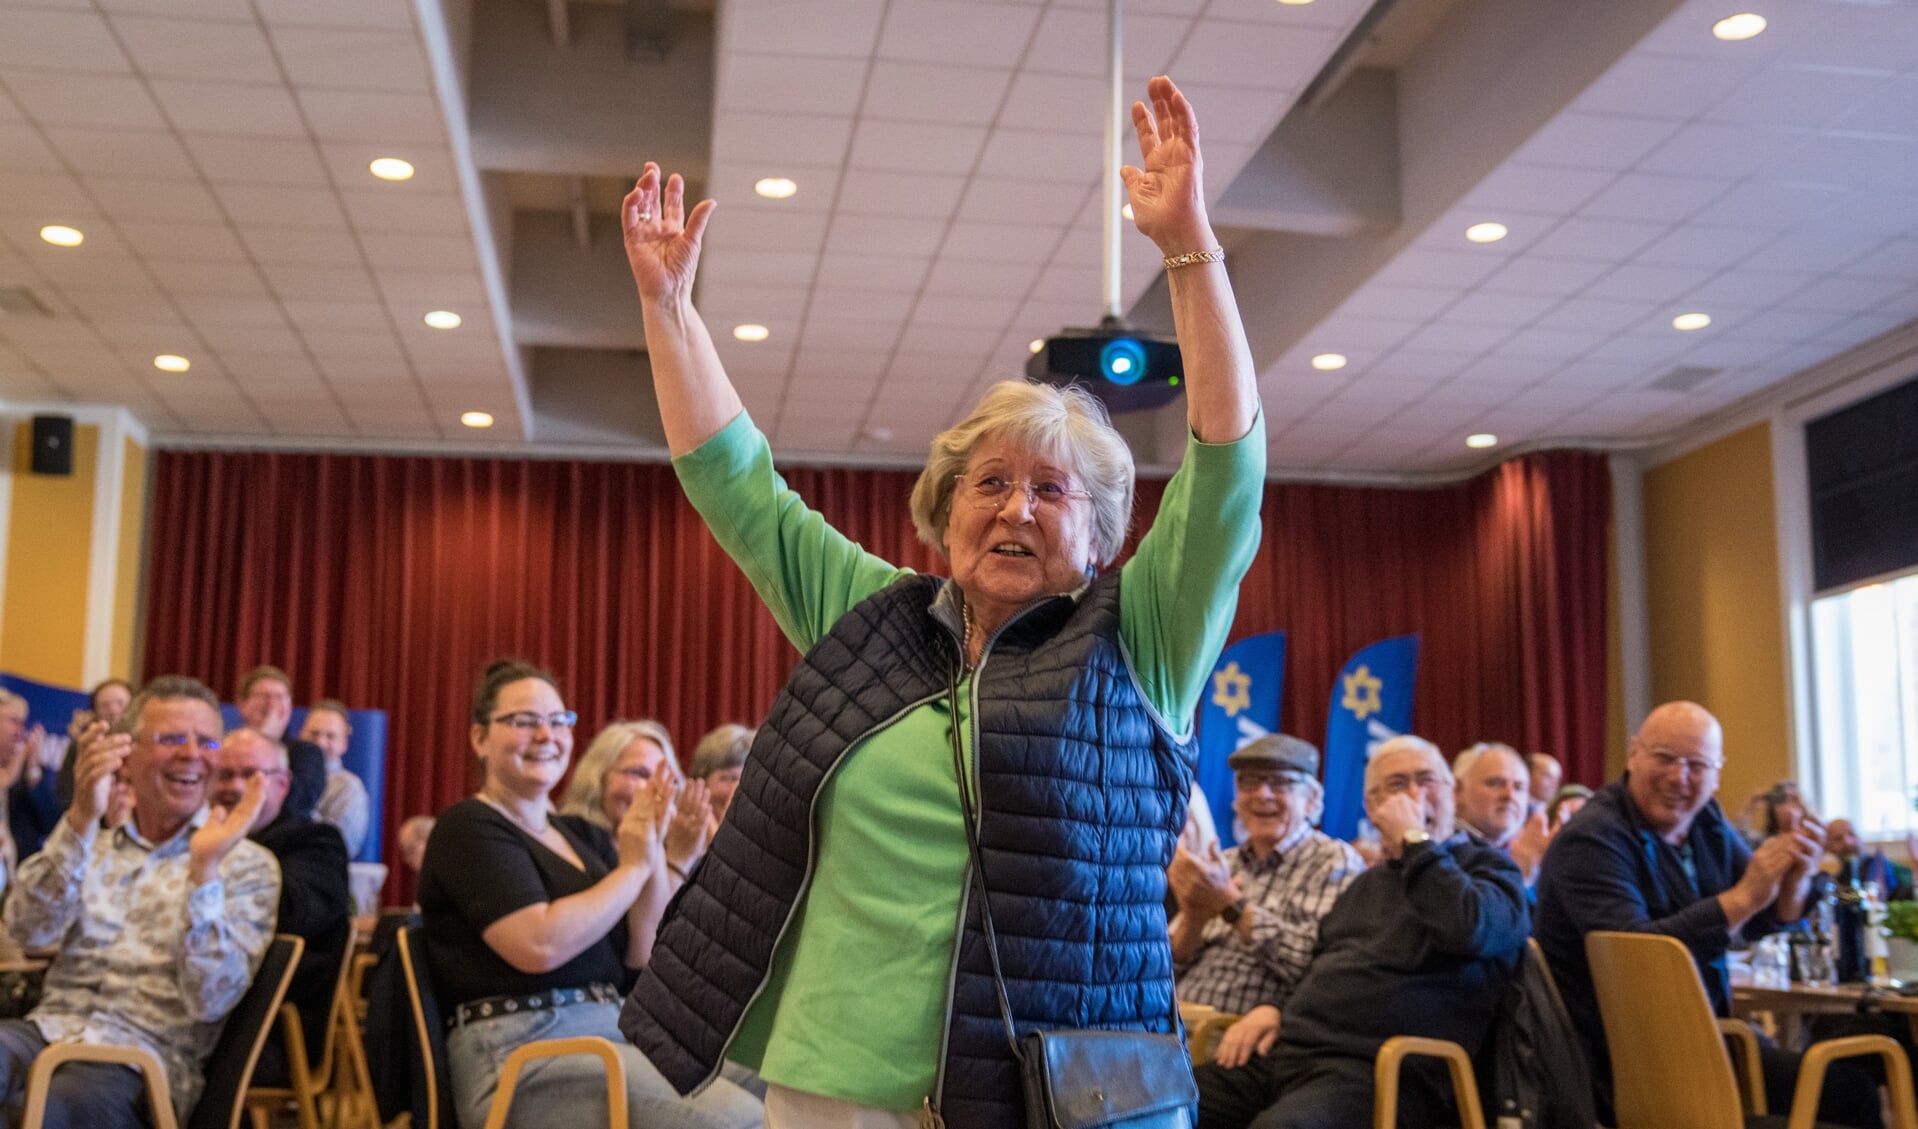 Wilma Nissen begyndte at danse gennem salen, da hun hørte prognoserne.